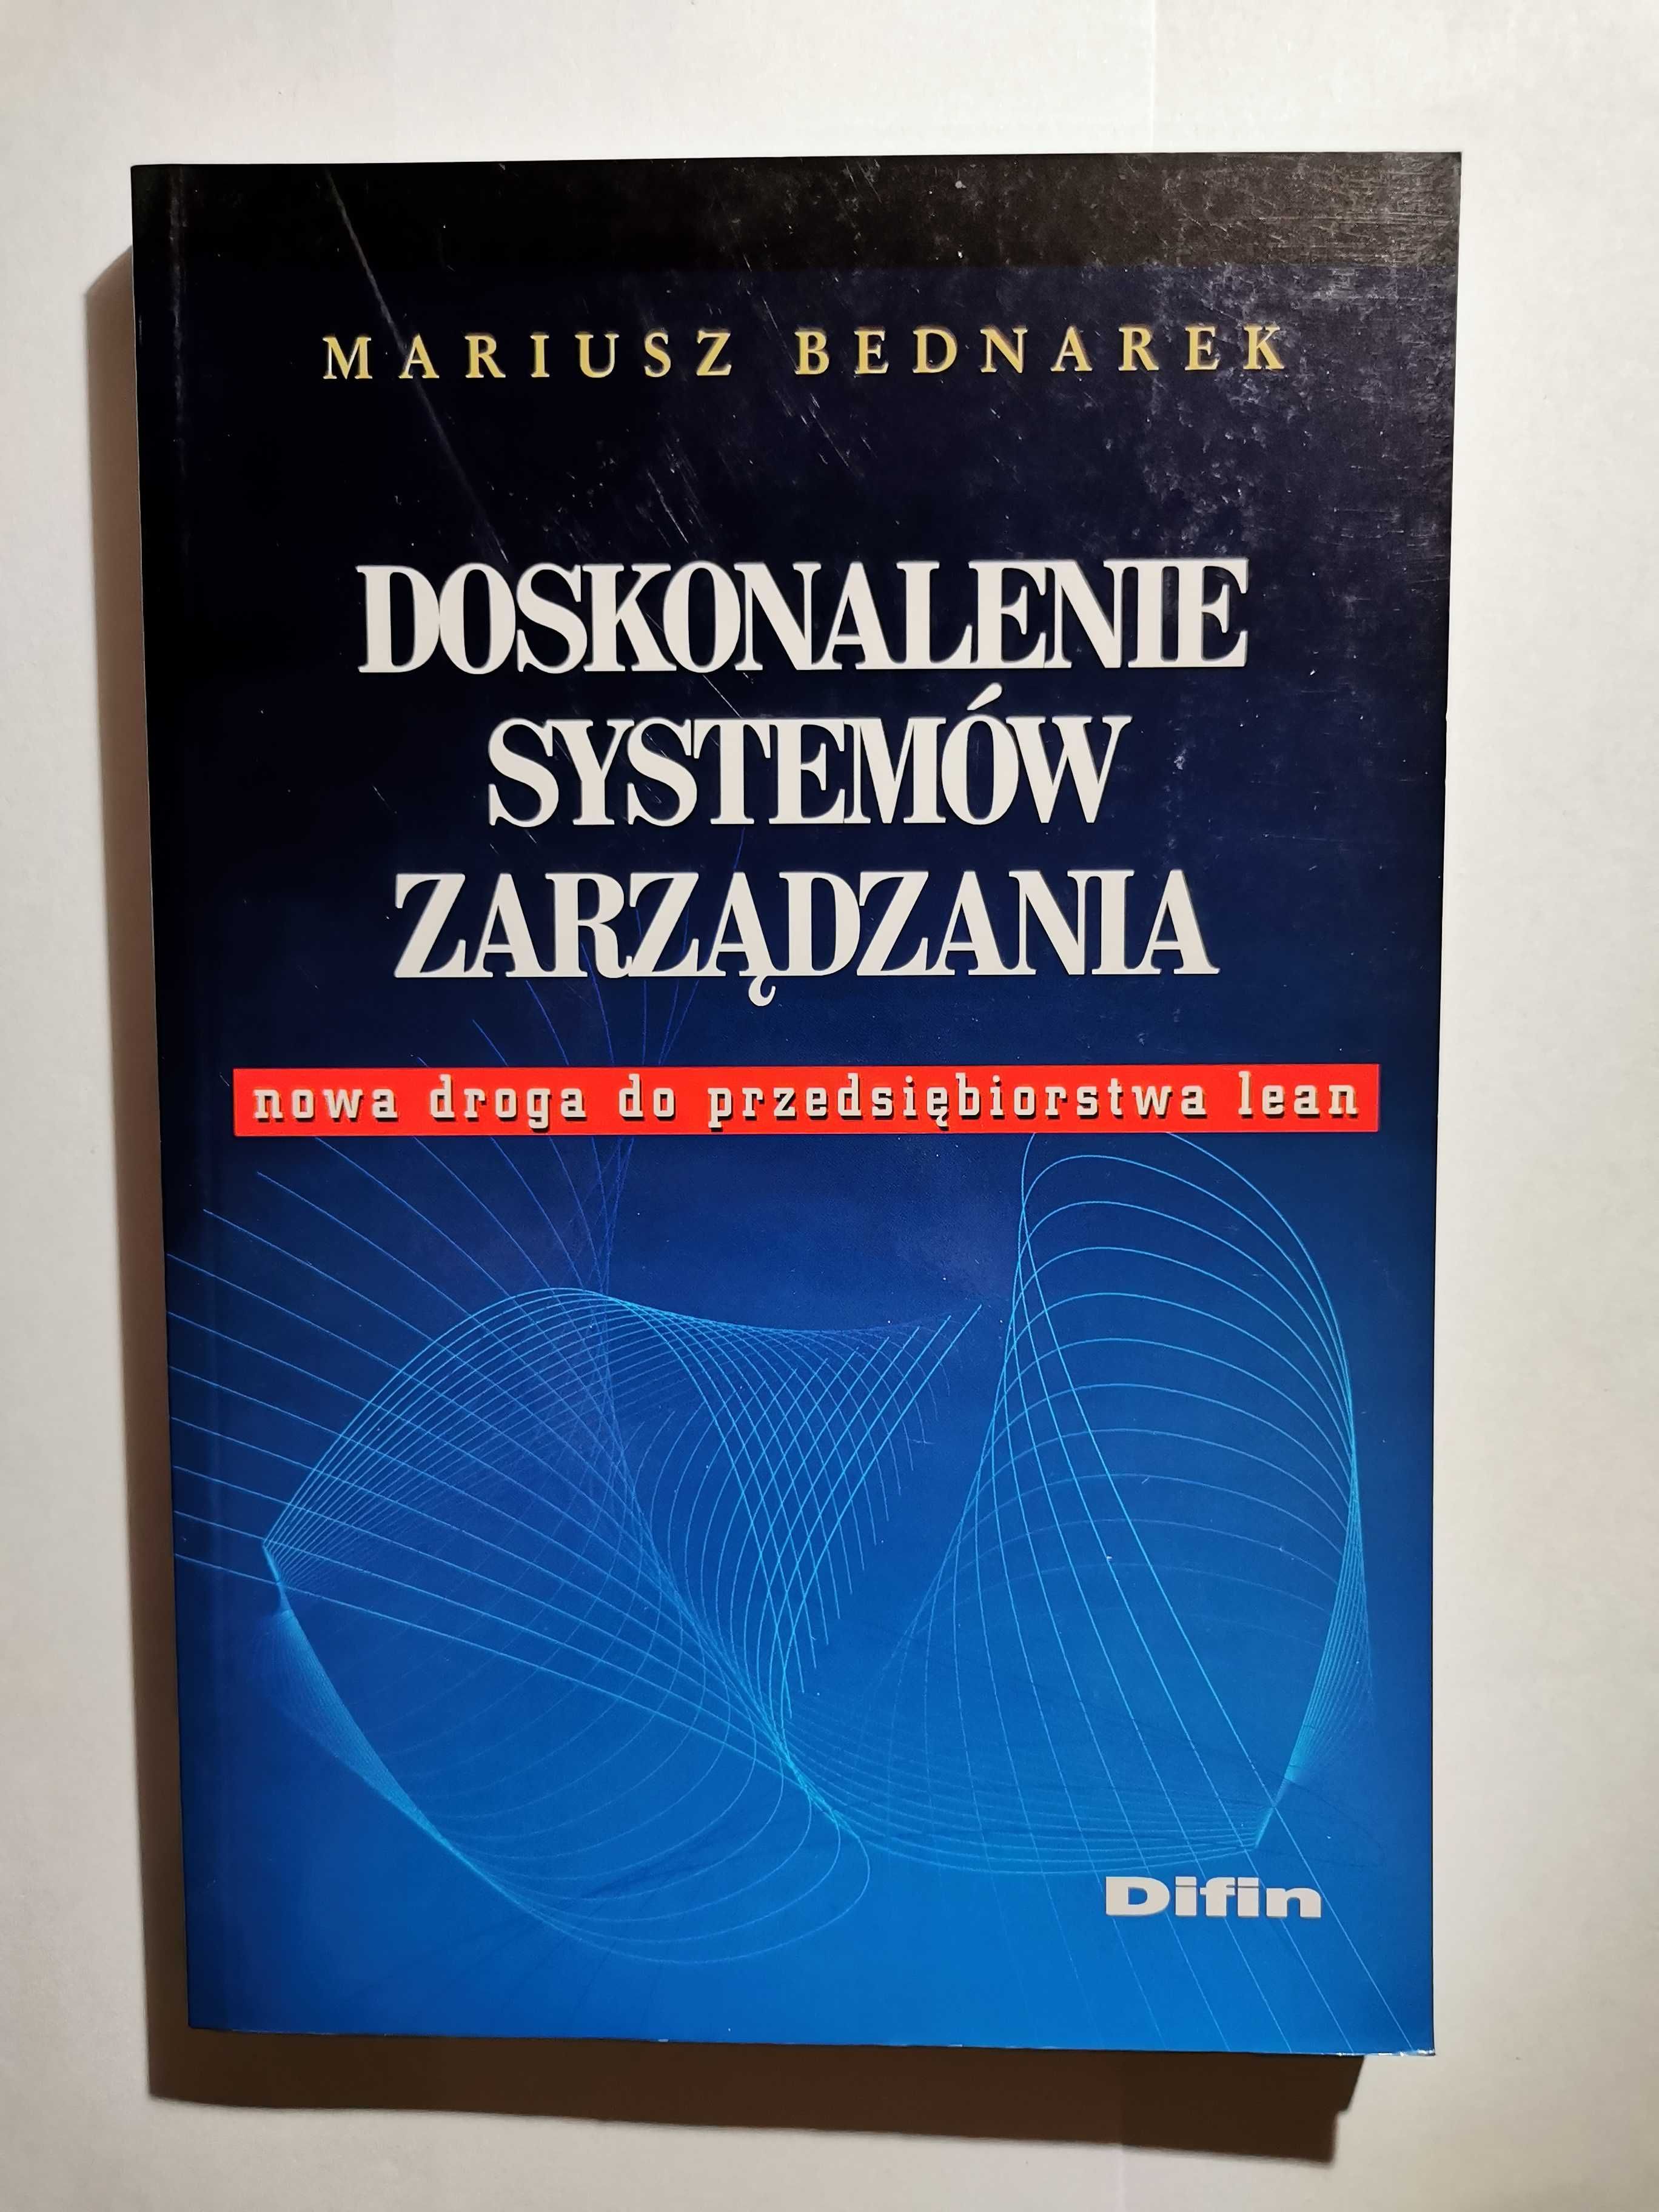 Doskonalenie Systemów Zarządzania Mariusz Bednarek